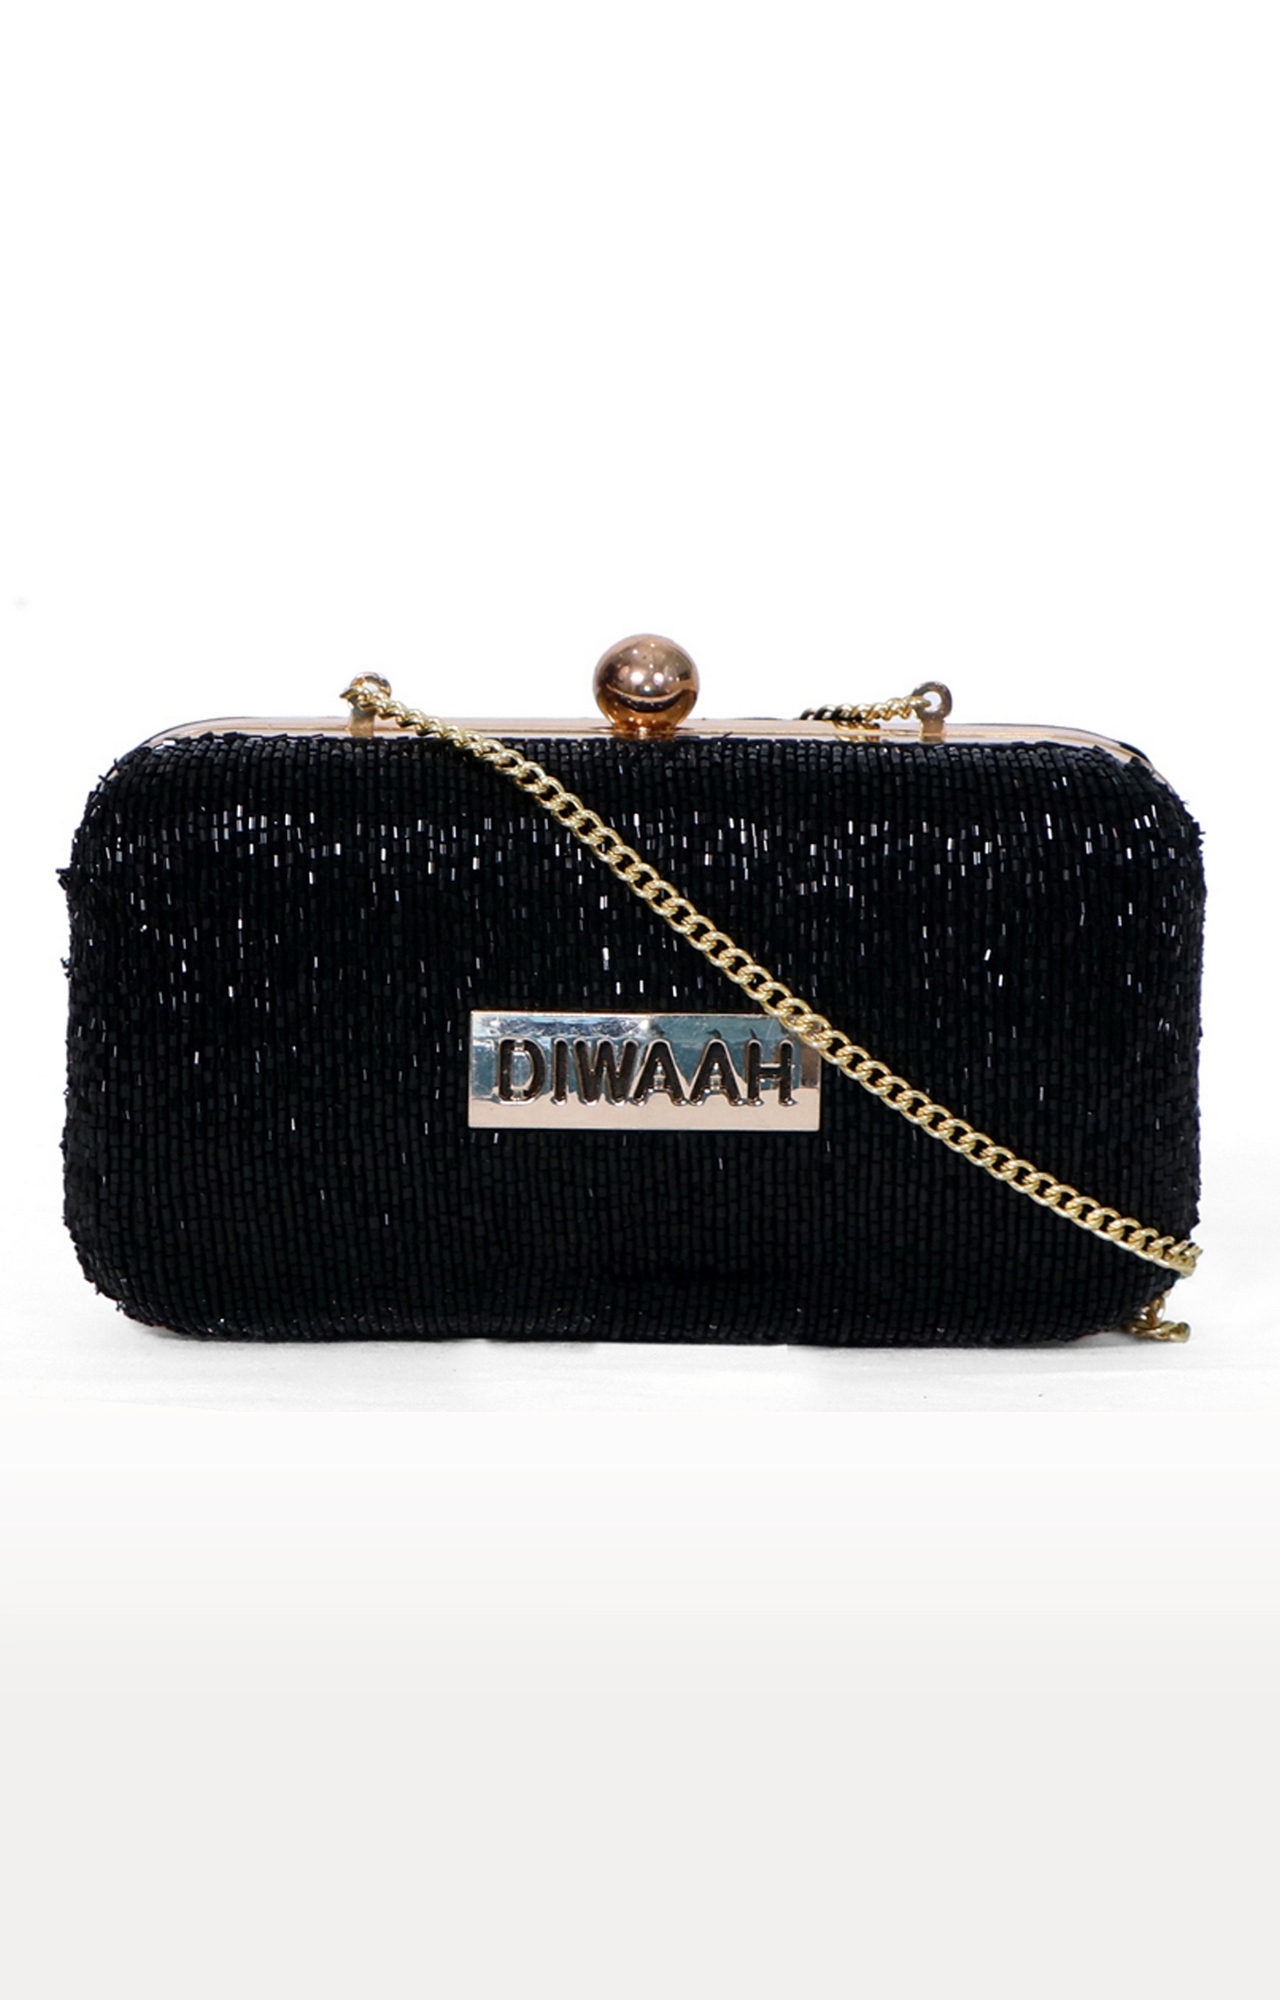 DIWAAH | Diwaah Black Embellished Clutches 0